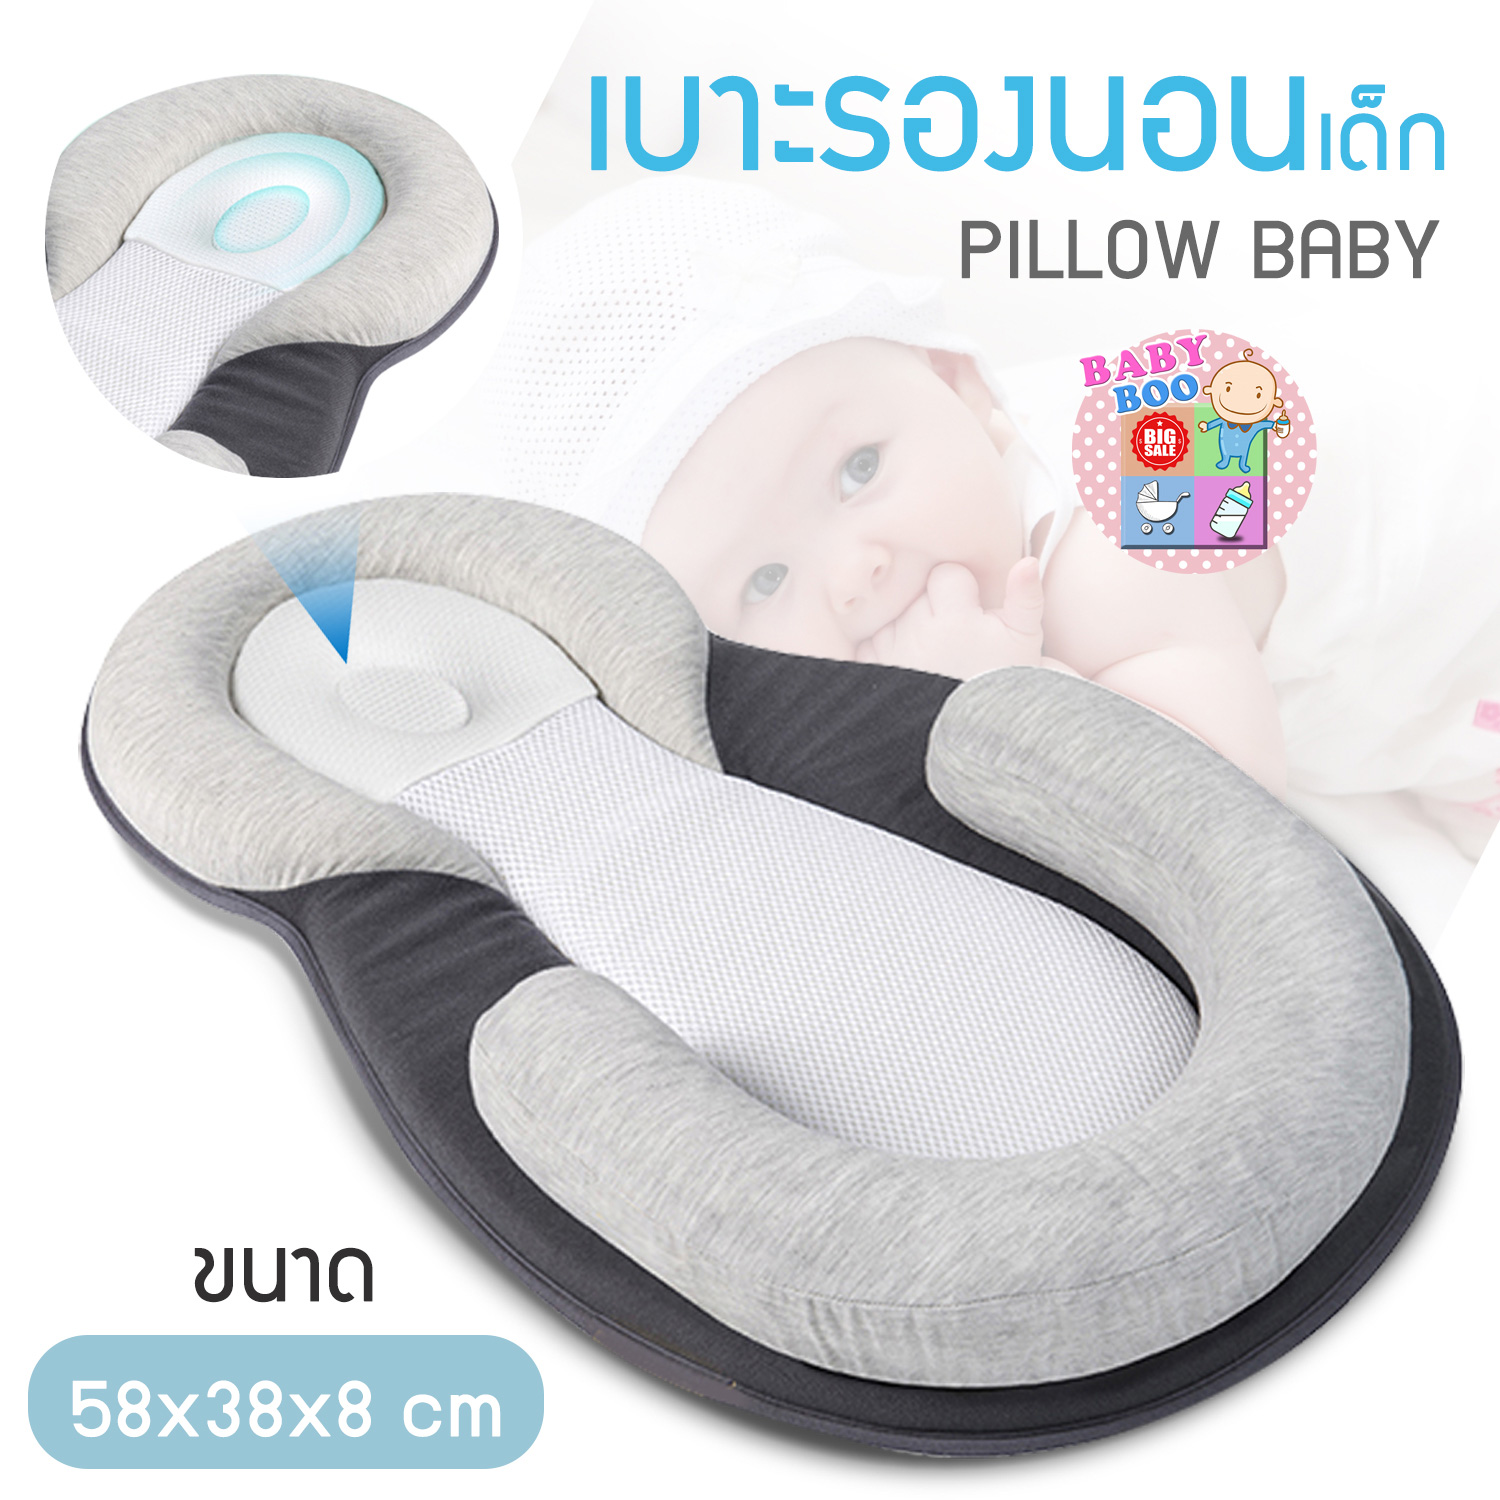 Baby-boo เบาะนอนสำหรับทารกแรกเกิด คอกเด็กแบบพกพา เบาะนอนสำหรับทารกพับได้  เบาะนอนสำหรับทารกแรกเกิดพกพาสะดวก